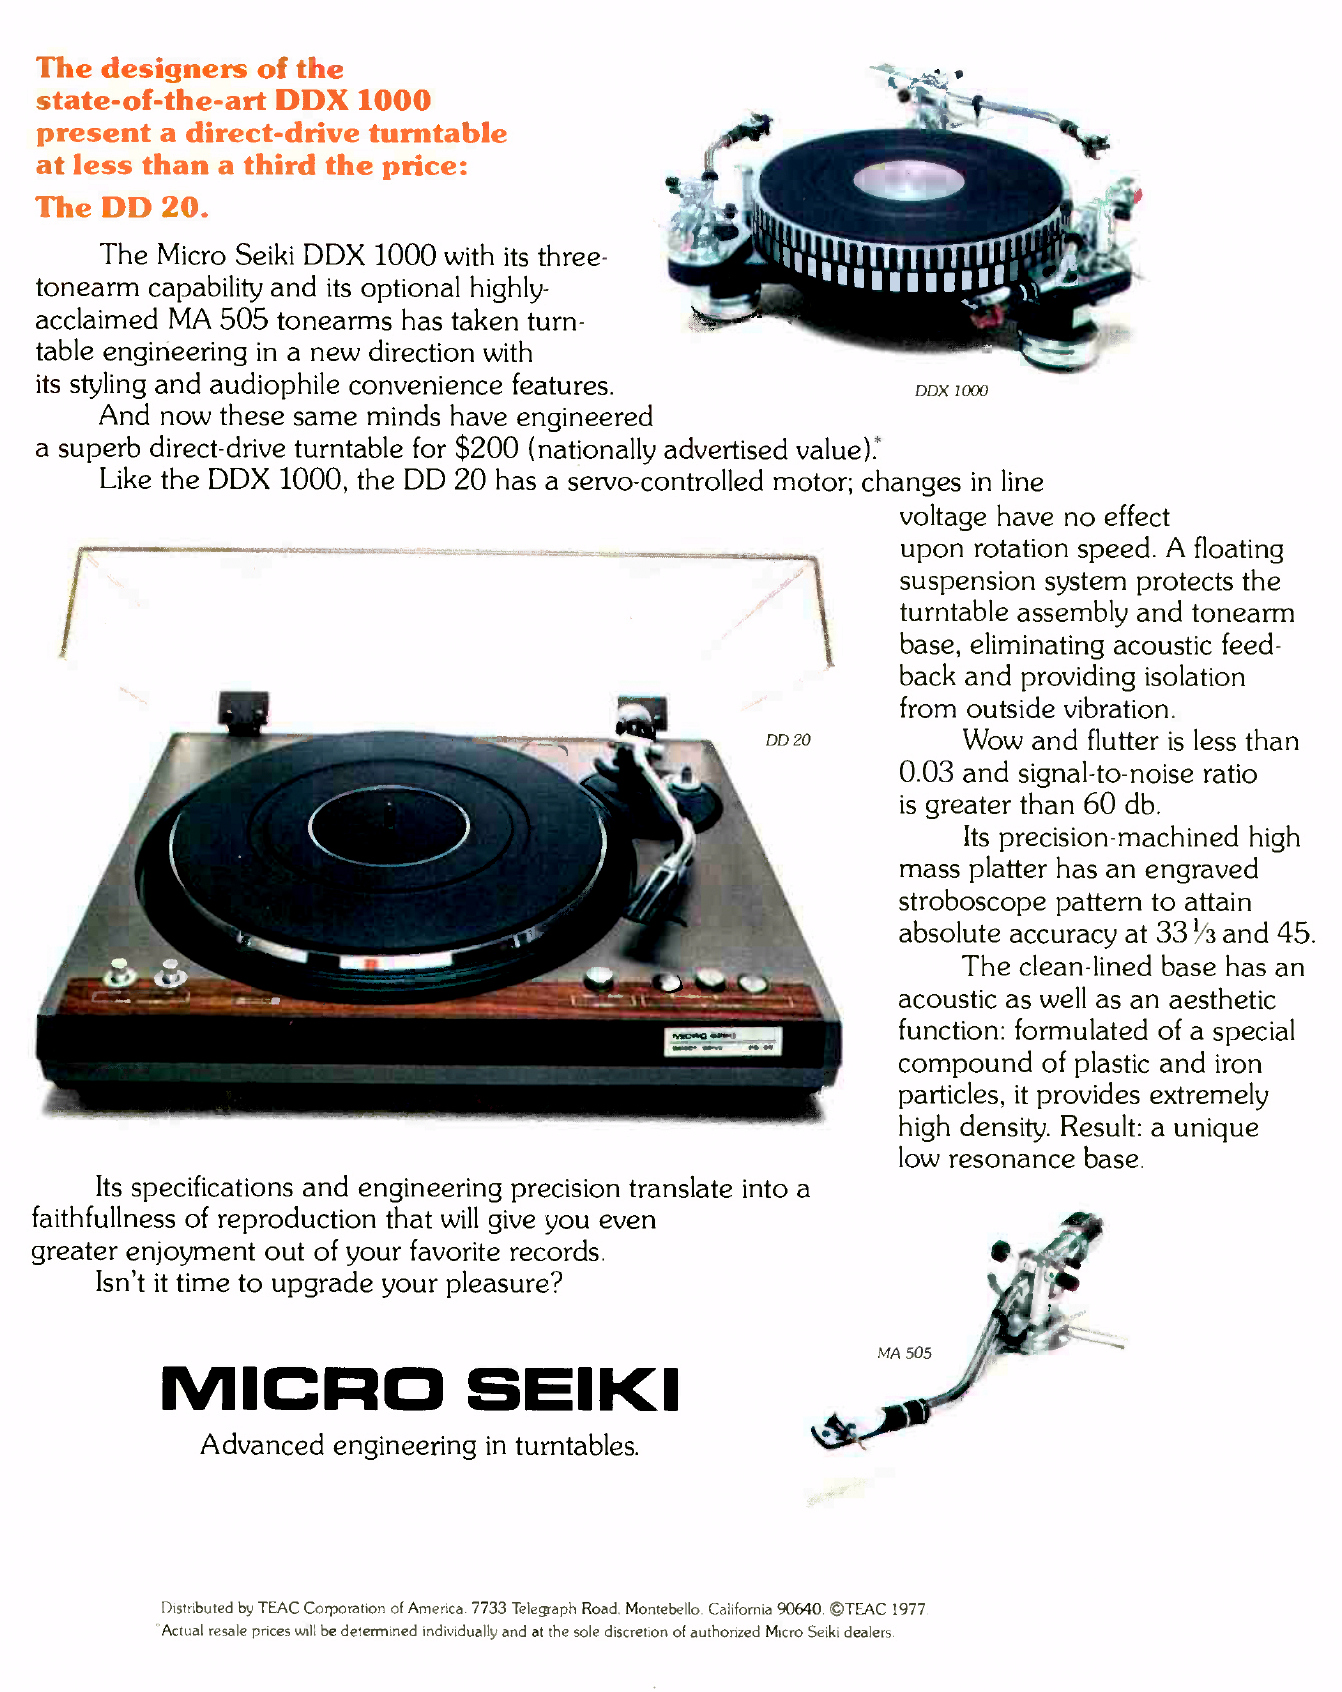 Micro Seiki DD-20-Werbung-1977.jpg